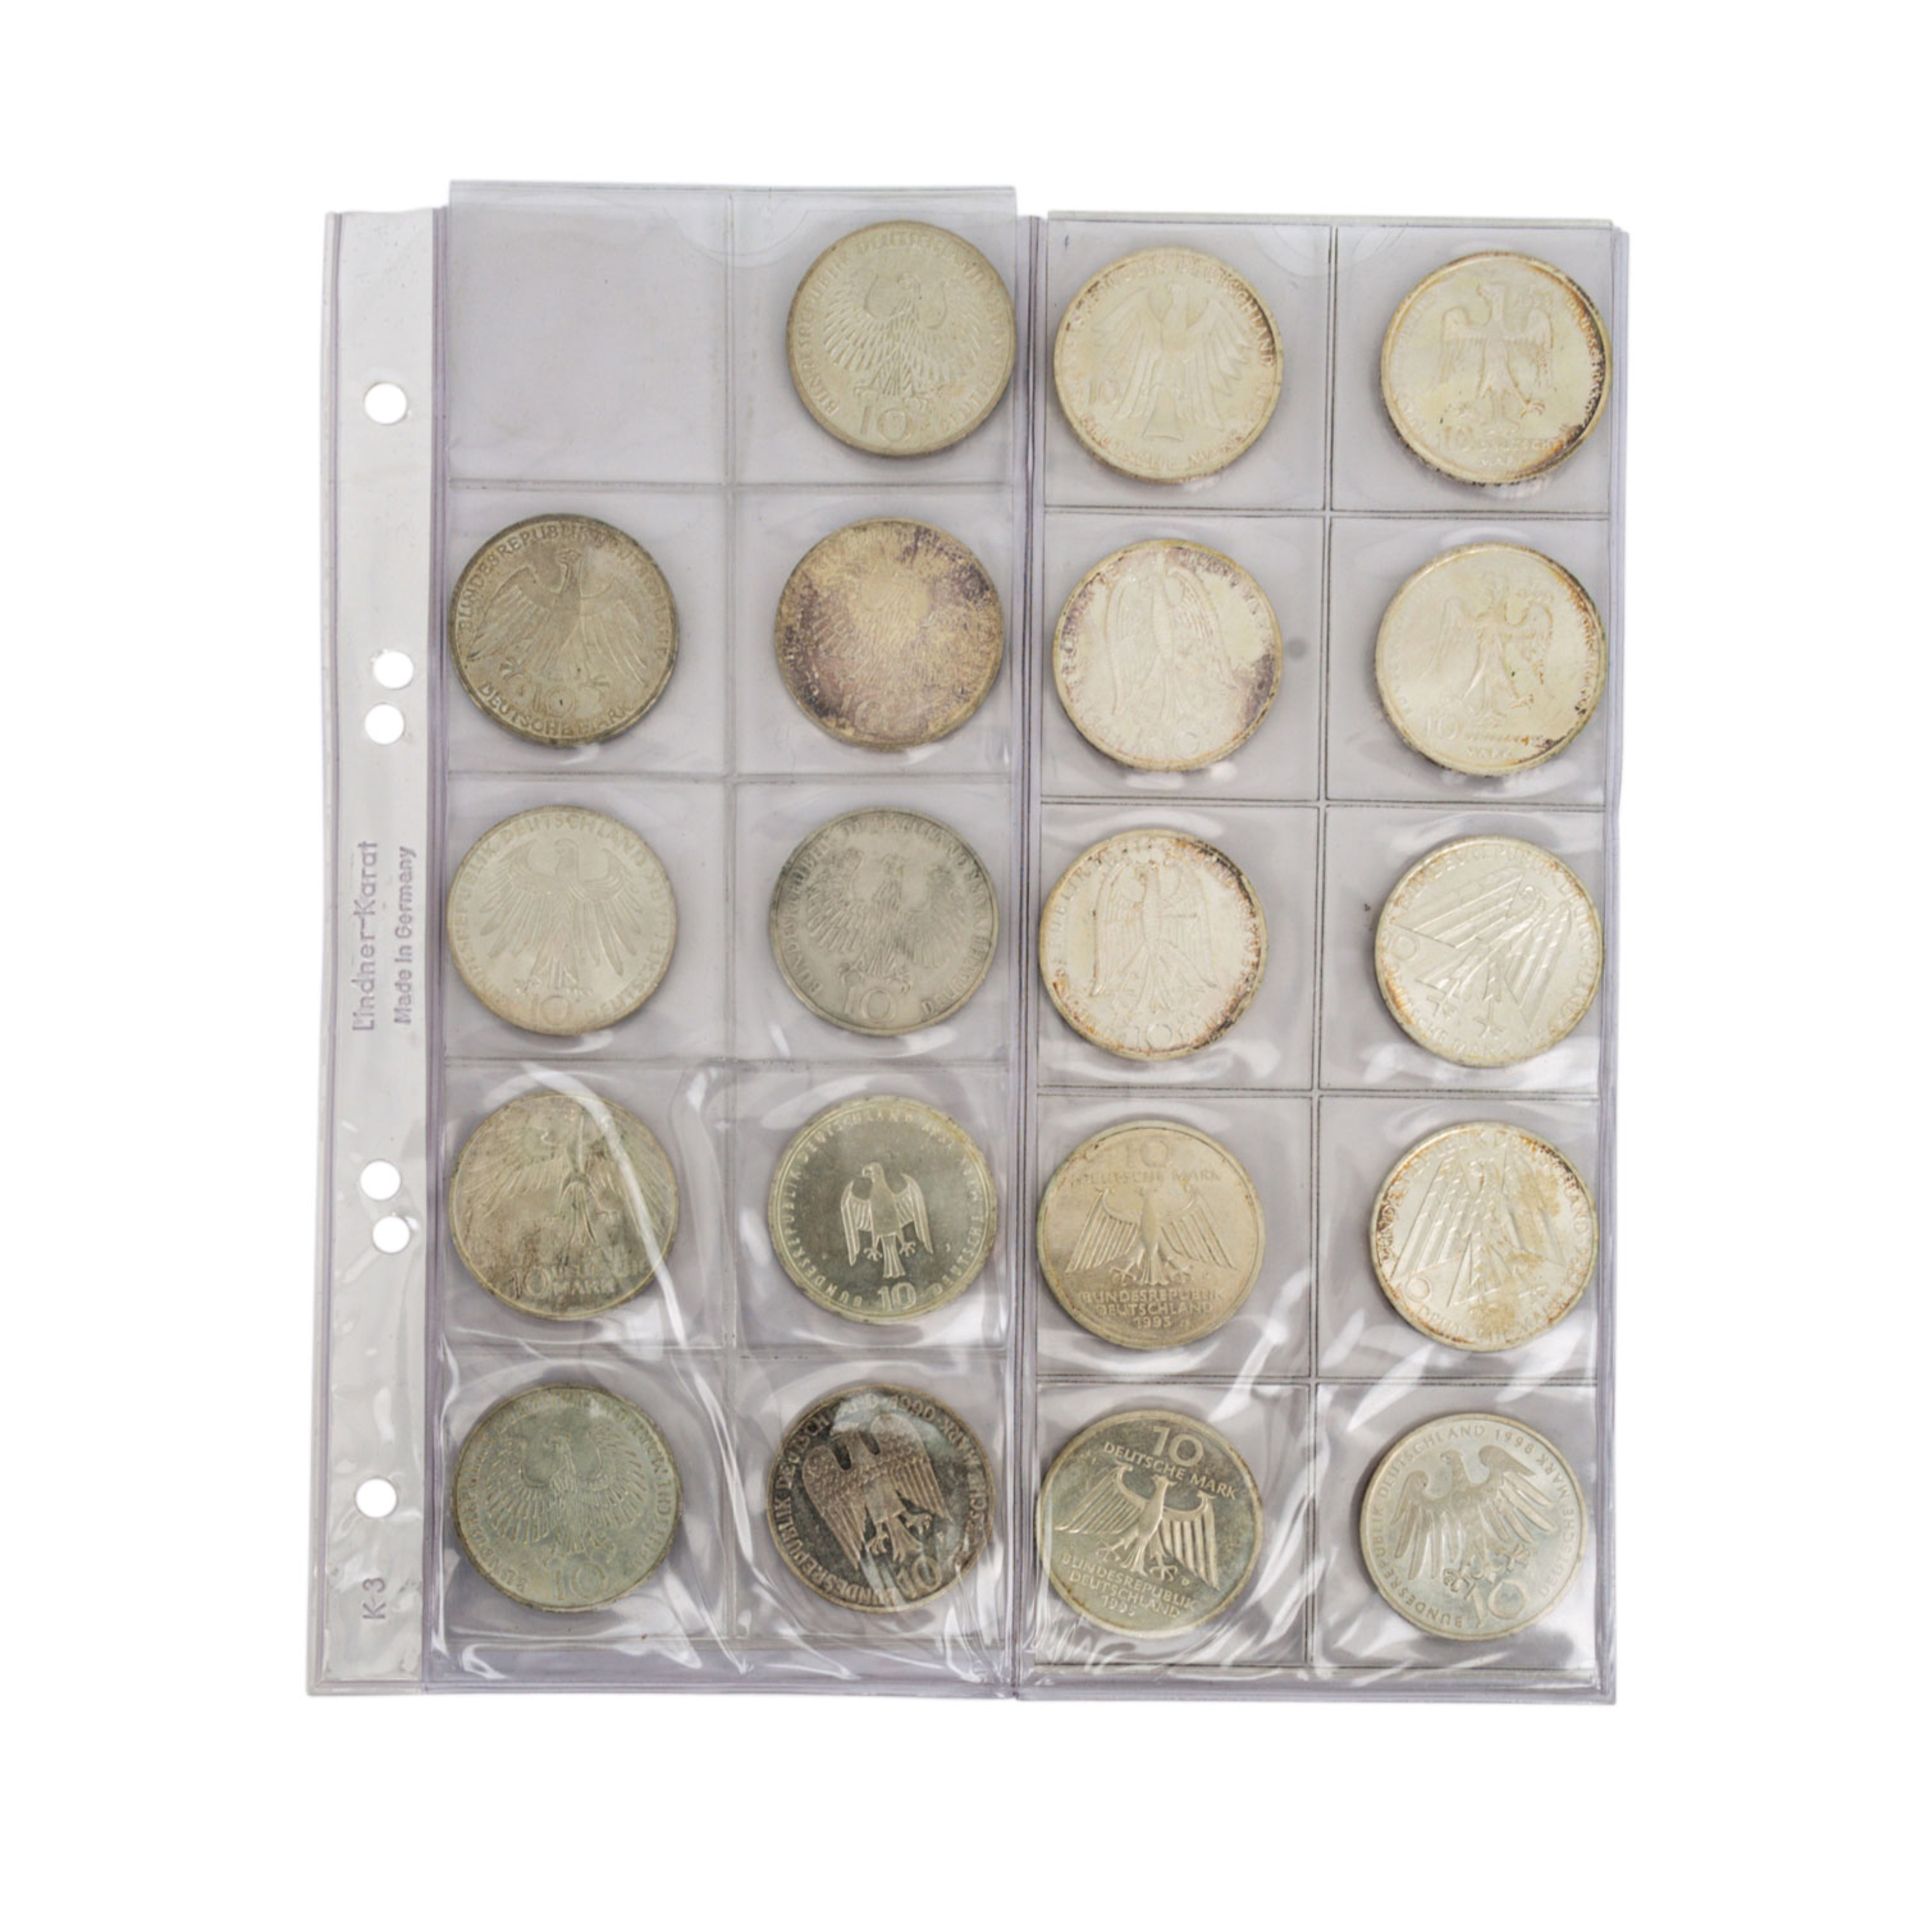 Karton mit Münzen und Medaillen, darin 11 x 1 oz. US Silver Eagle, 3 x 1 oz. Motivbar - Bild 4 aus 14